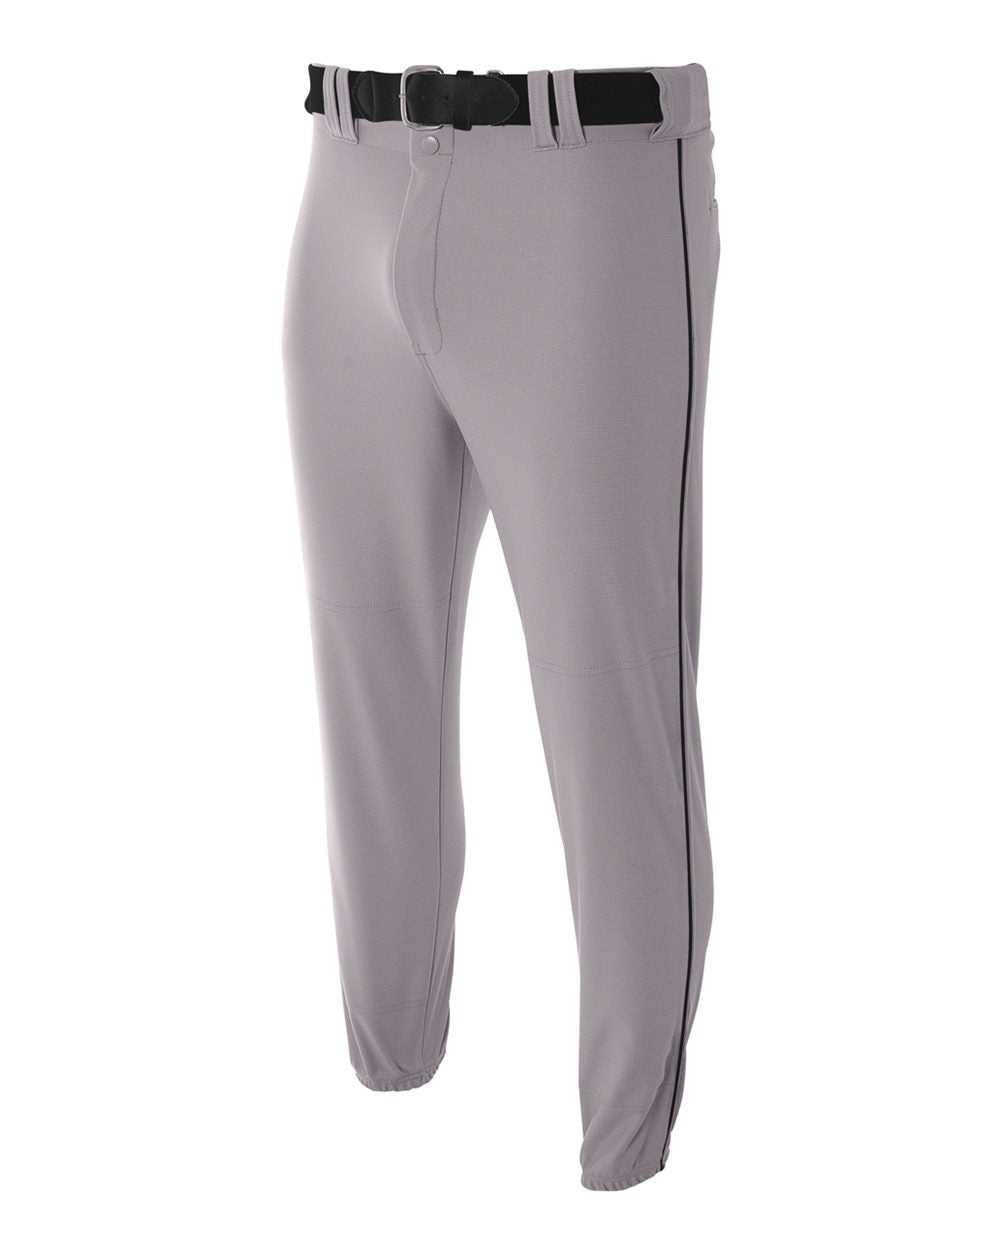 A4 N6178 Pro Style Elastic Bottom Baseball Pant - Gray Black - HIT a Double